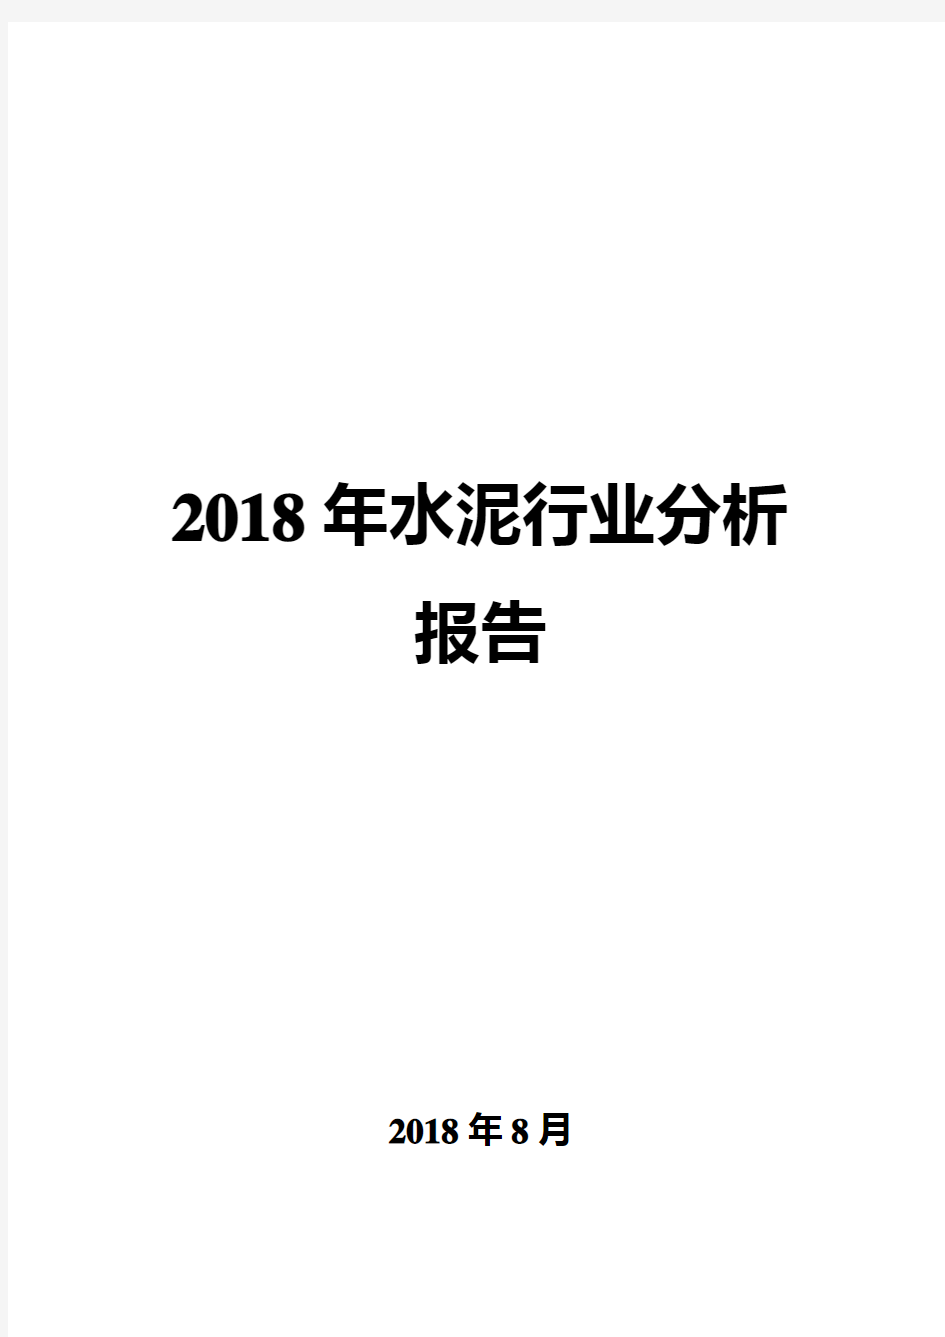 2018年水泥行业分析报告